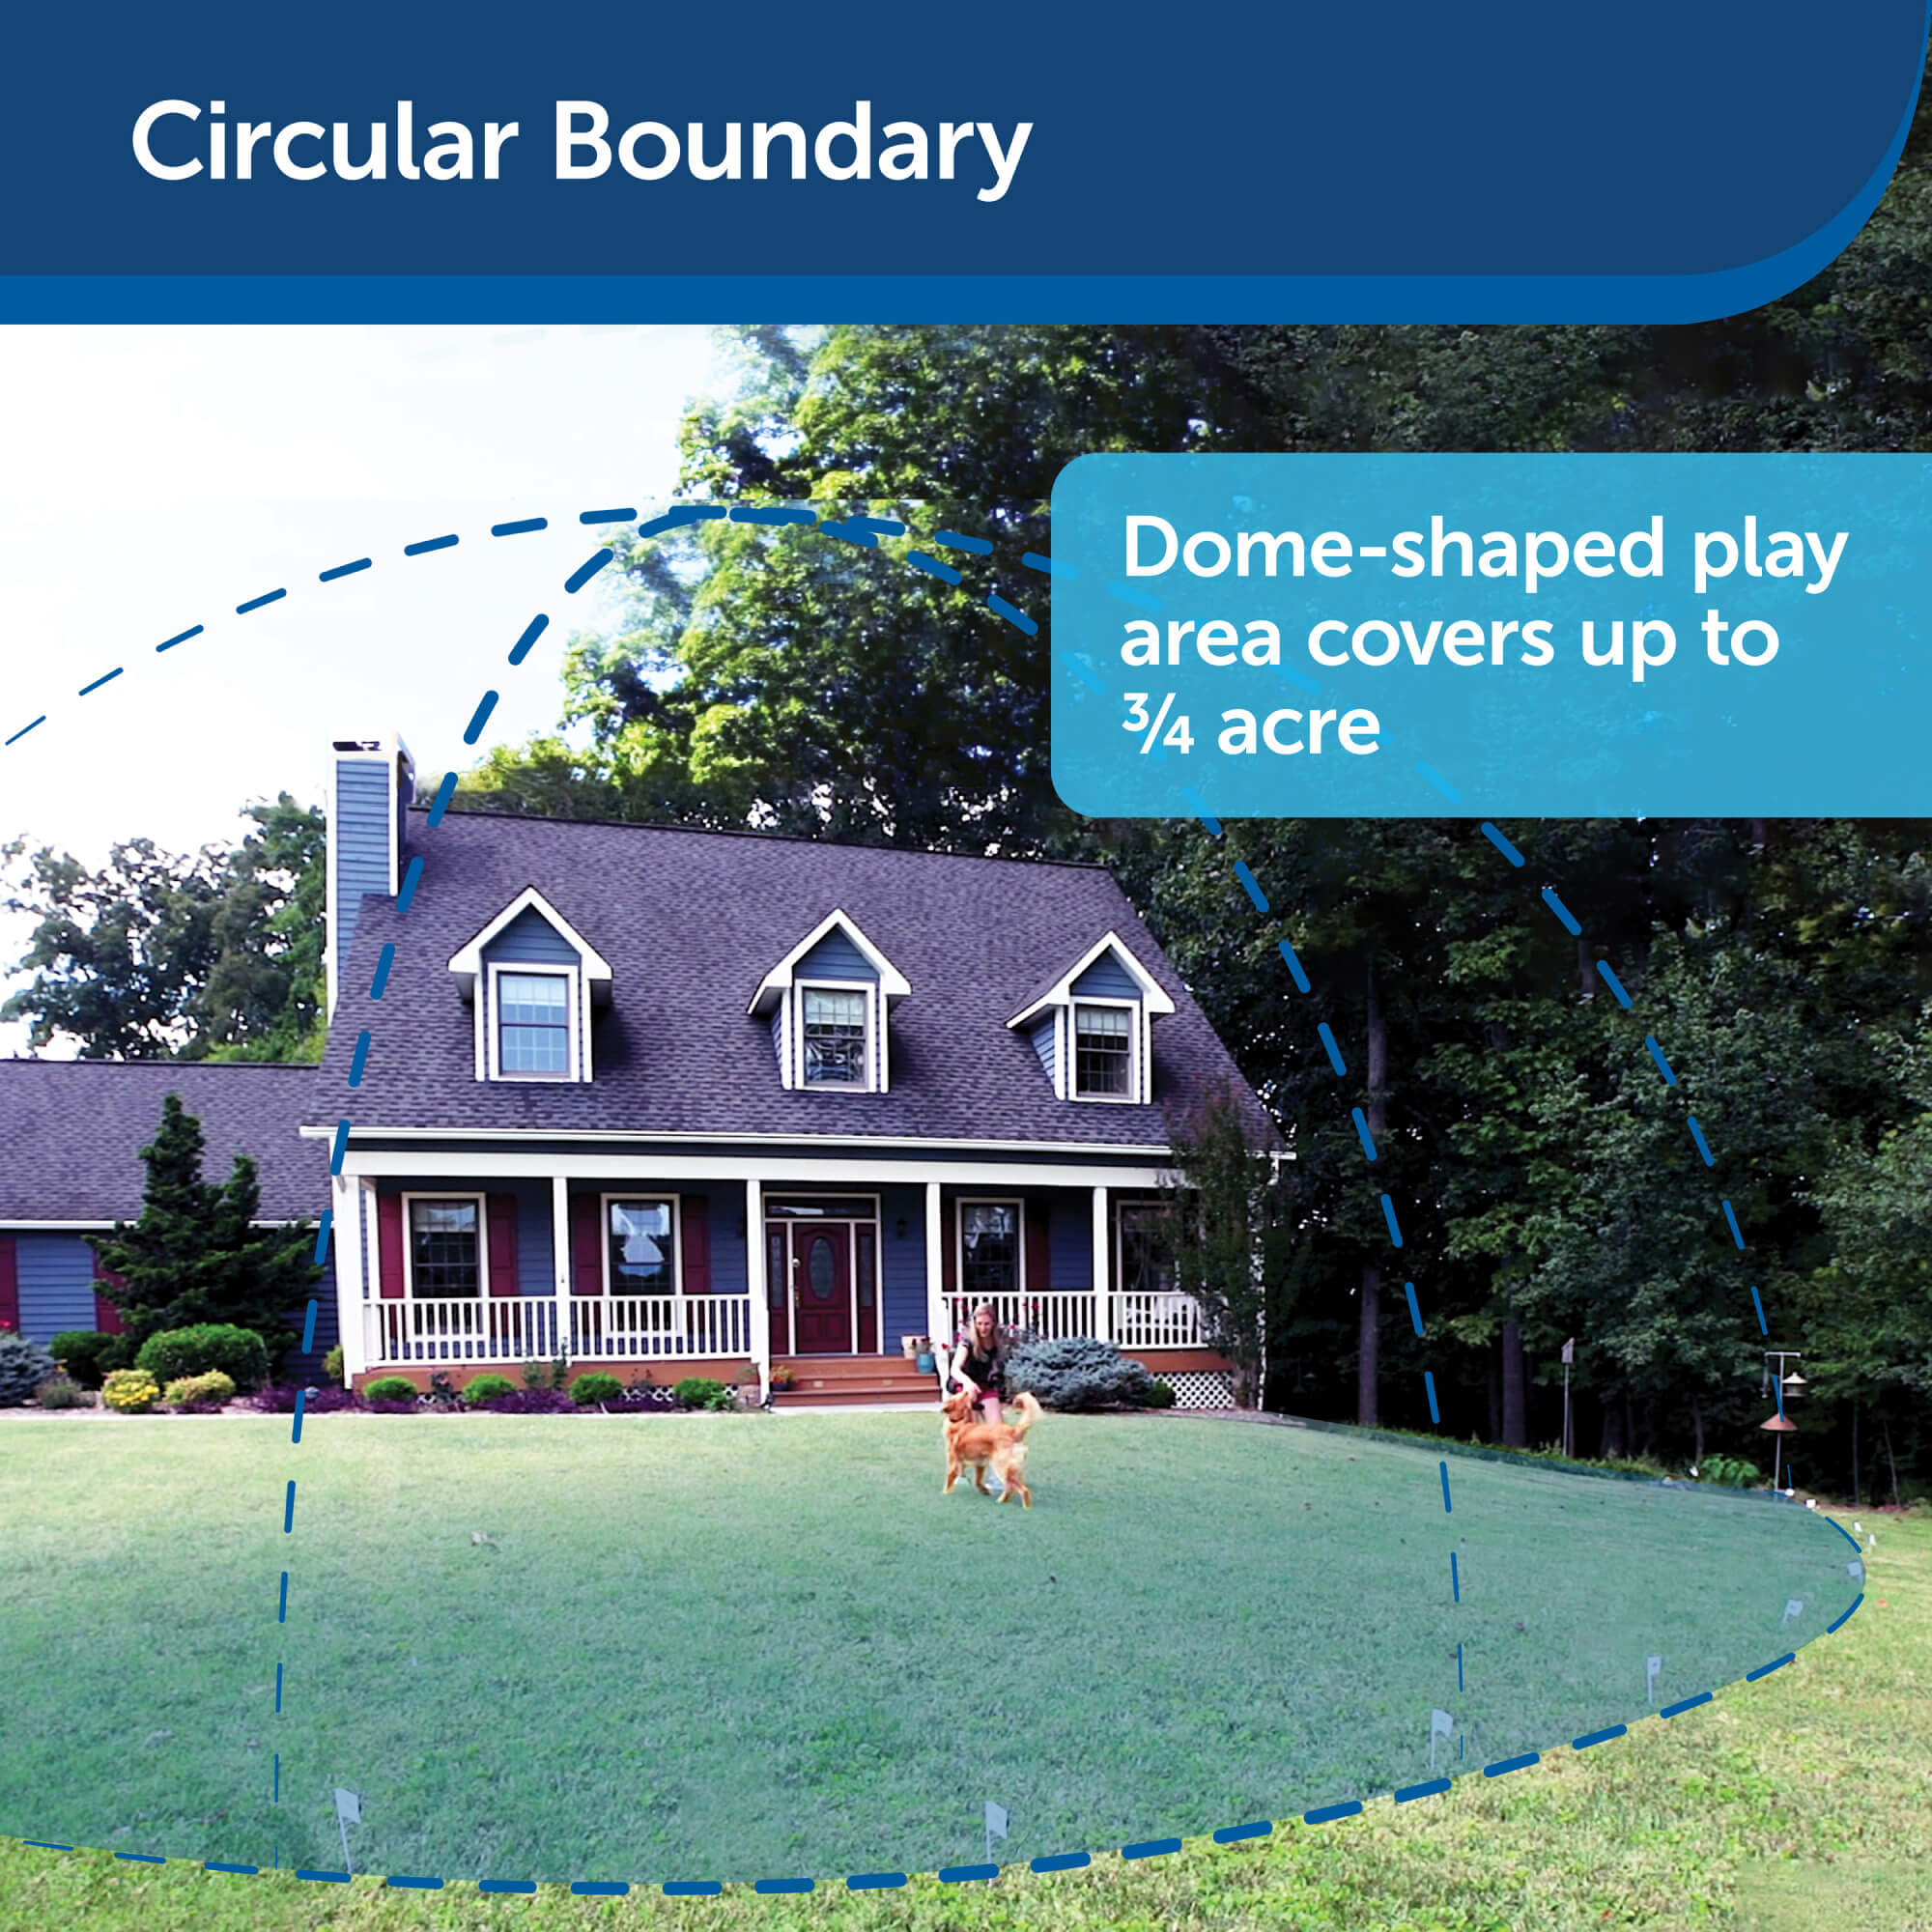 Circular boundary